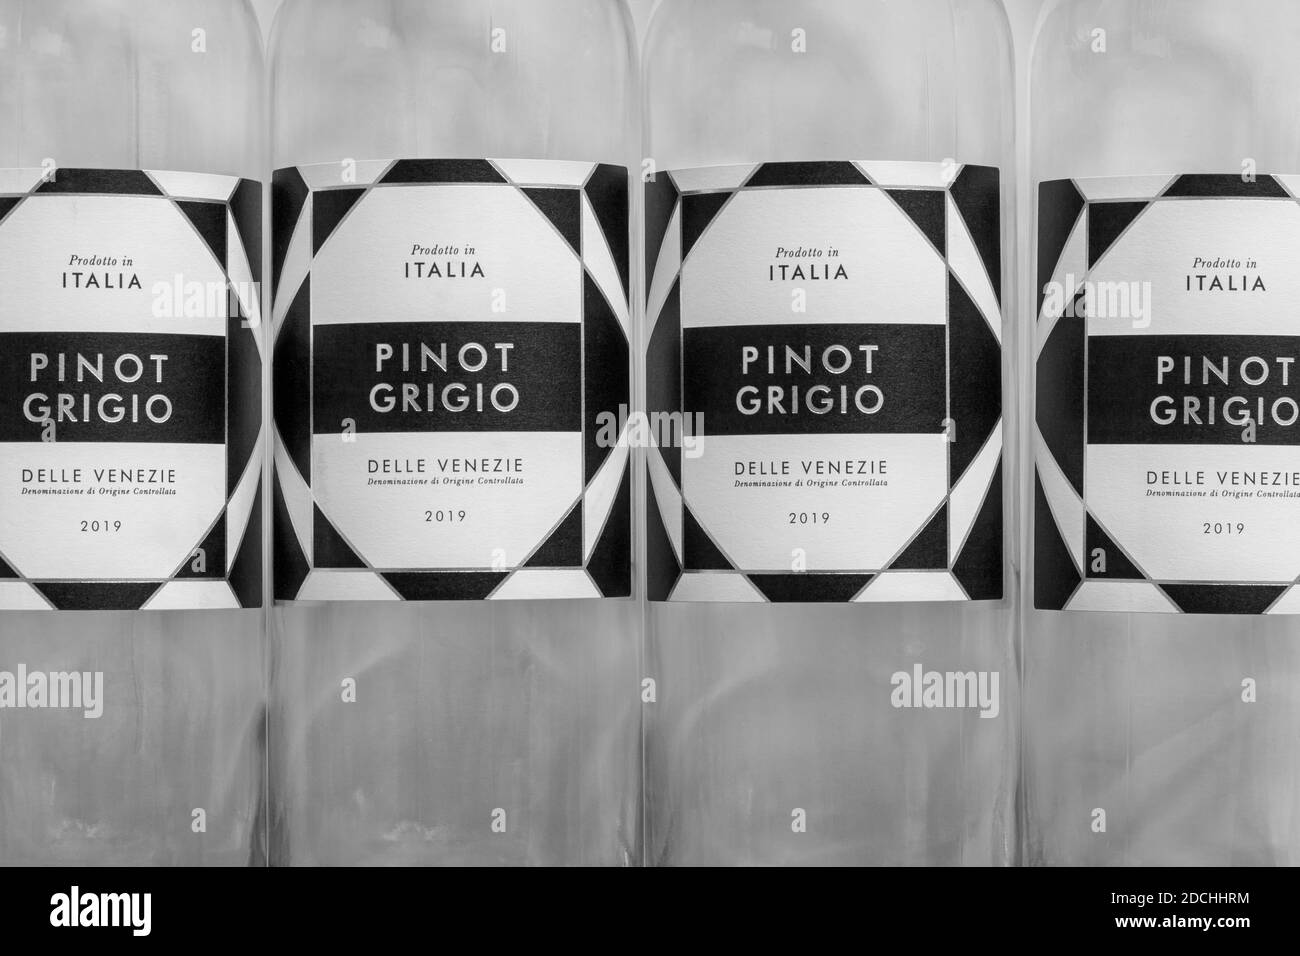 Pinot Grigio Delle Venezie - étiquettes sur bouteilles vides de vin blanc - produit de l'Italie, italien Banque D'Images